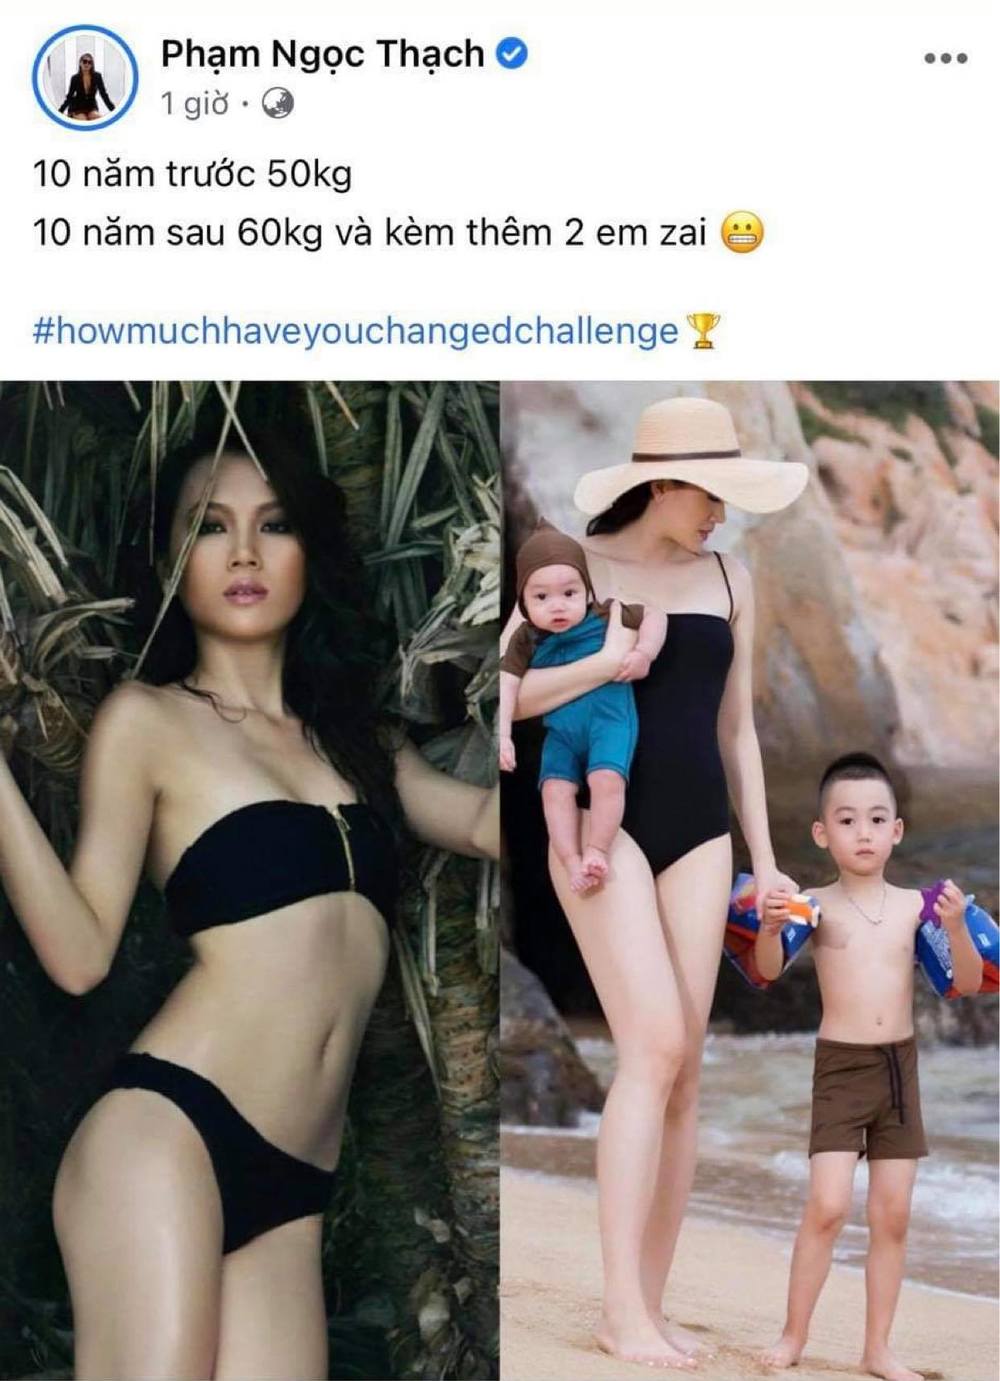  
Siêu mẫu Ngọc Thạch sau 10 năm đã là mẹ của hai nhóc tì và thân hình tăng thêm 10kg. (Ảnh: Chụp màn hình)